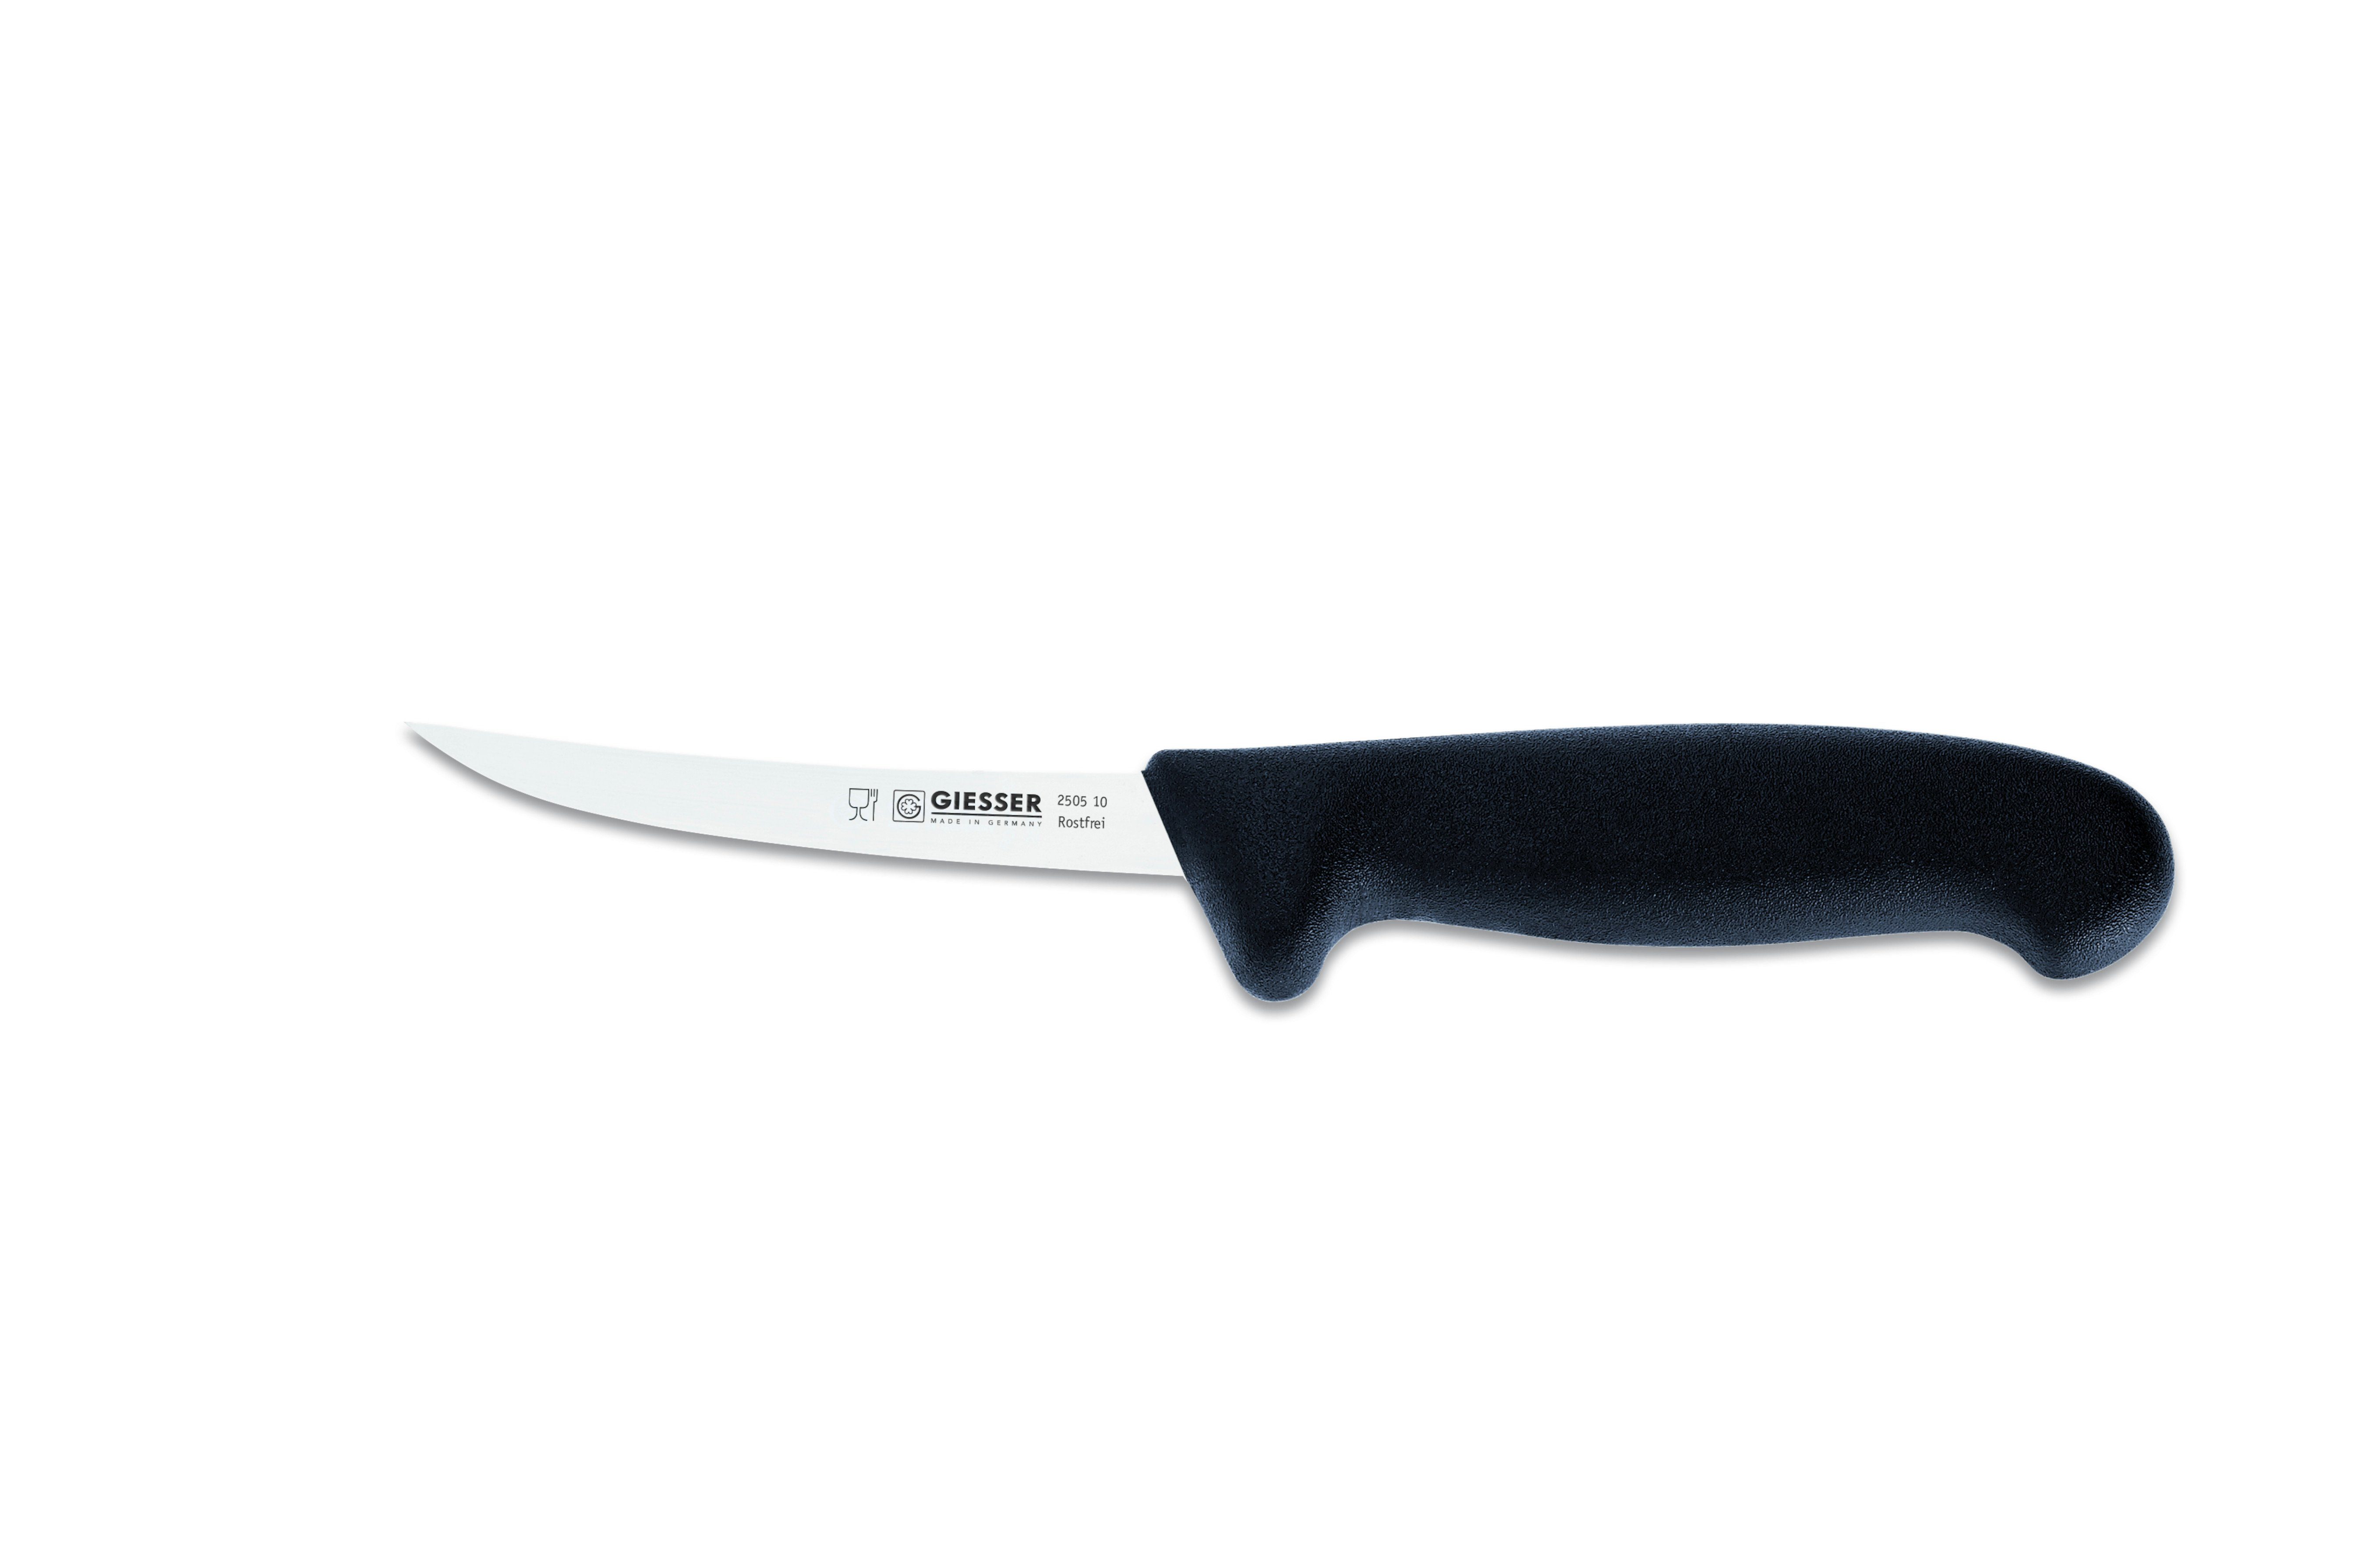 Giesser Messer Ausbeinmesser Fleischermesser 2505 13-17, Klingenstärke: sehr flexibel, flexibel, stark Schwarz | Ausbeinmesser